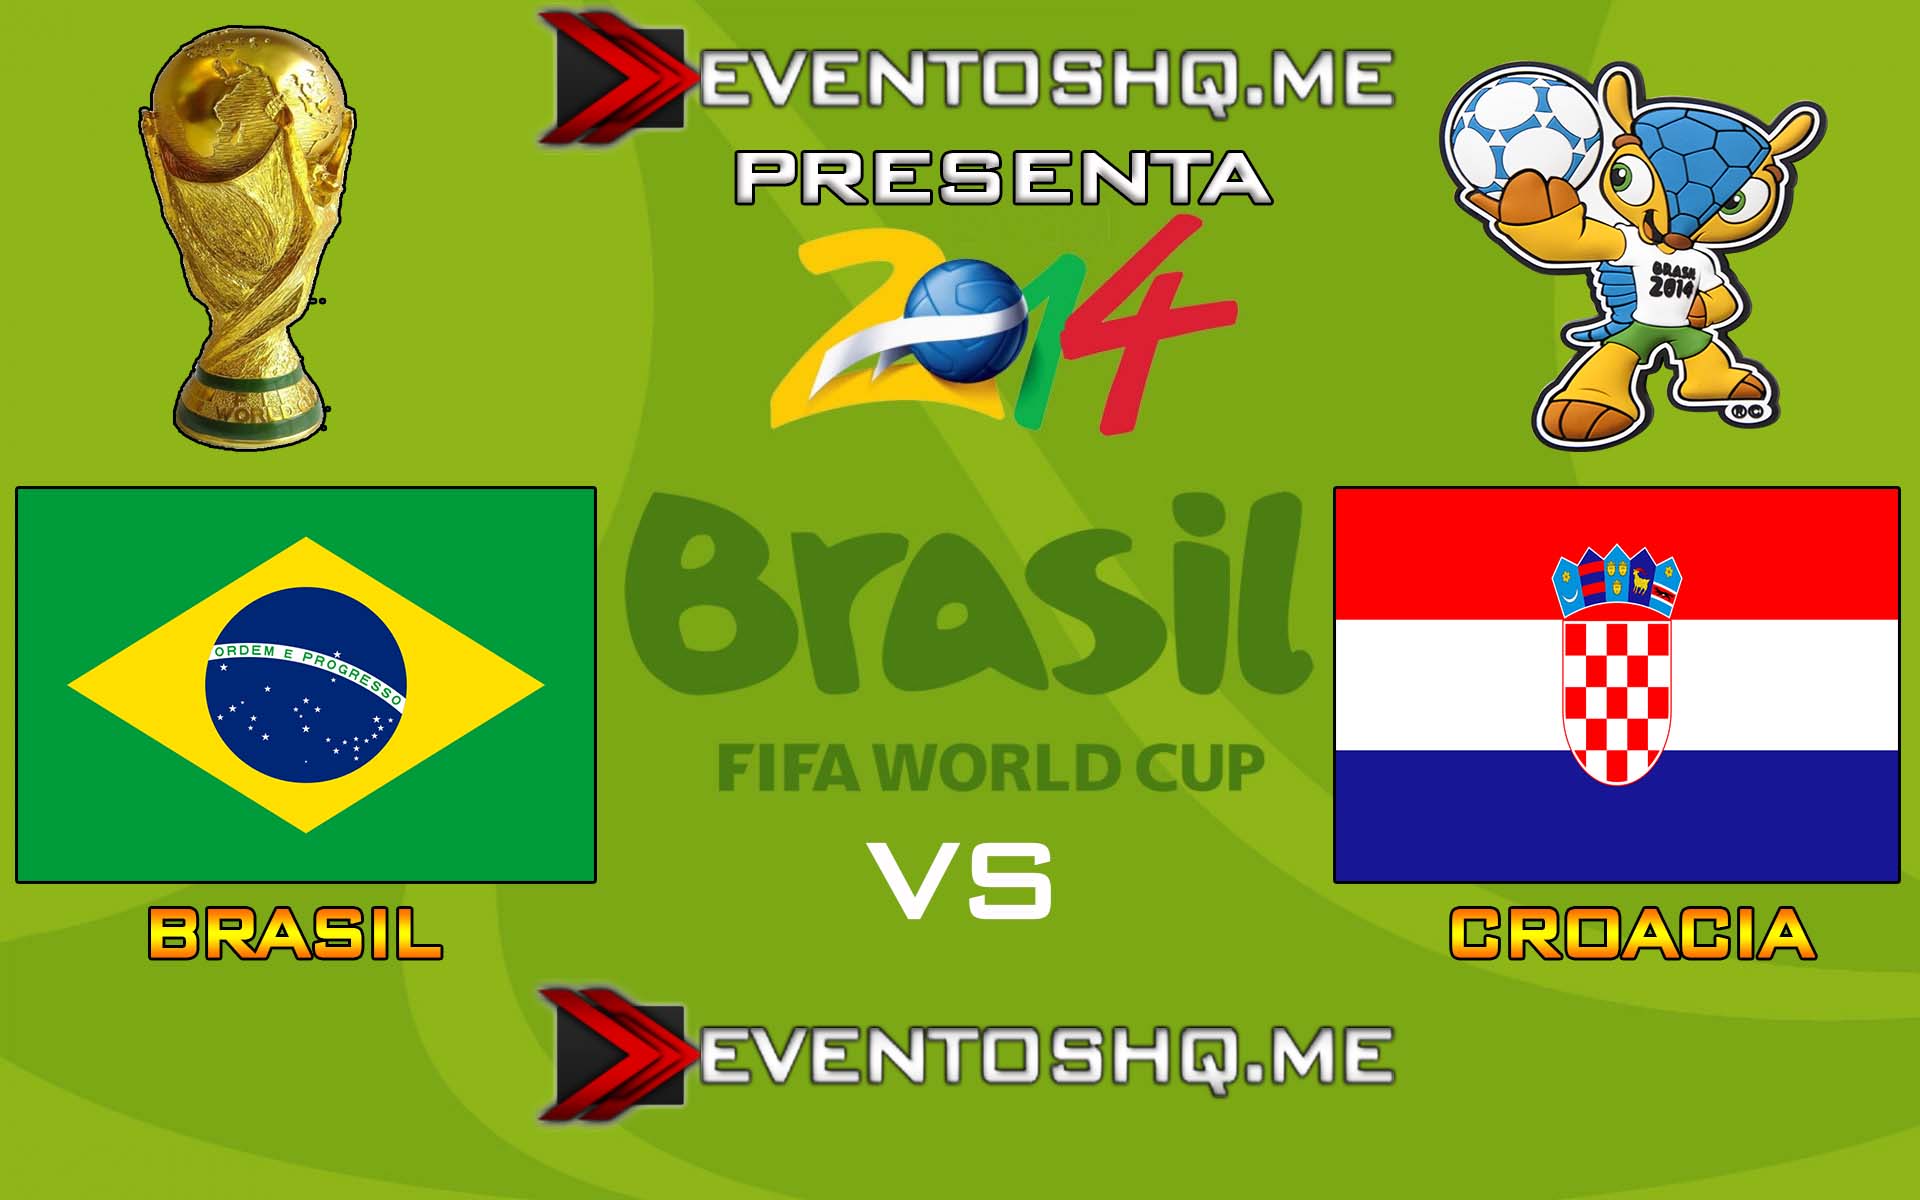 Ver en Vivo Brasil vs Croacia Mundial Brasil 2014 www.eventoshq.me